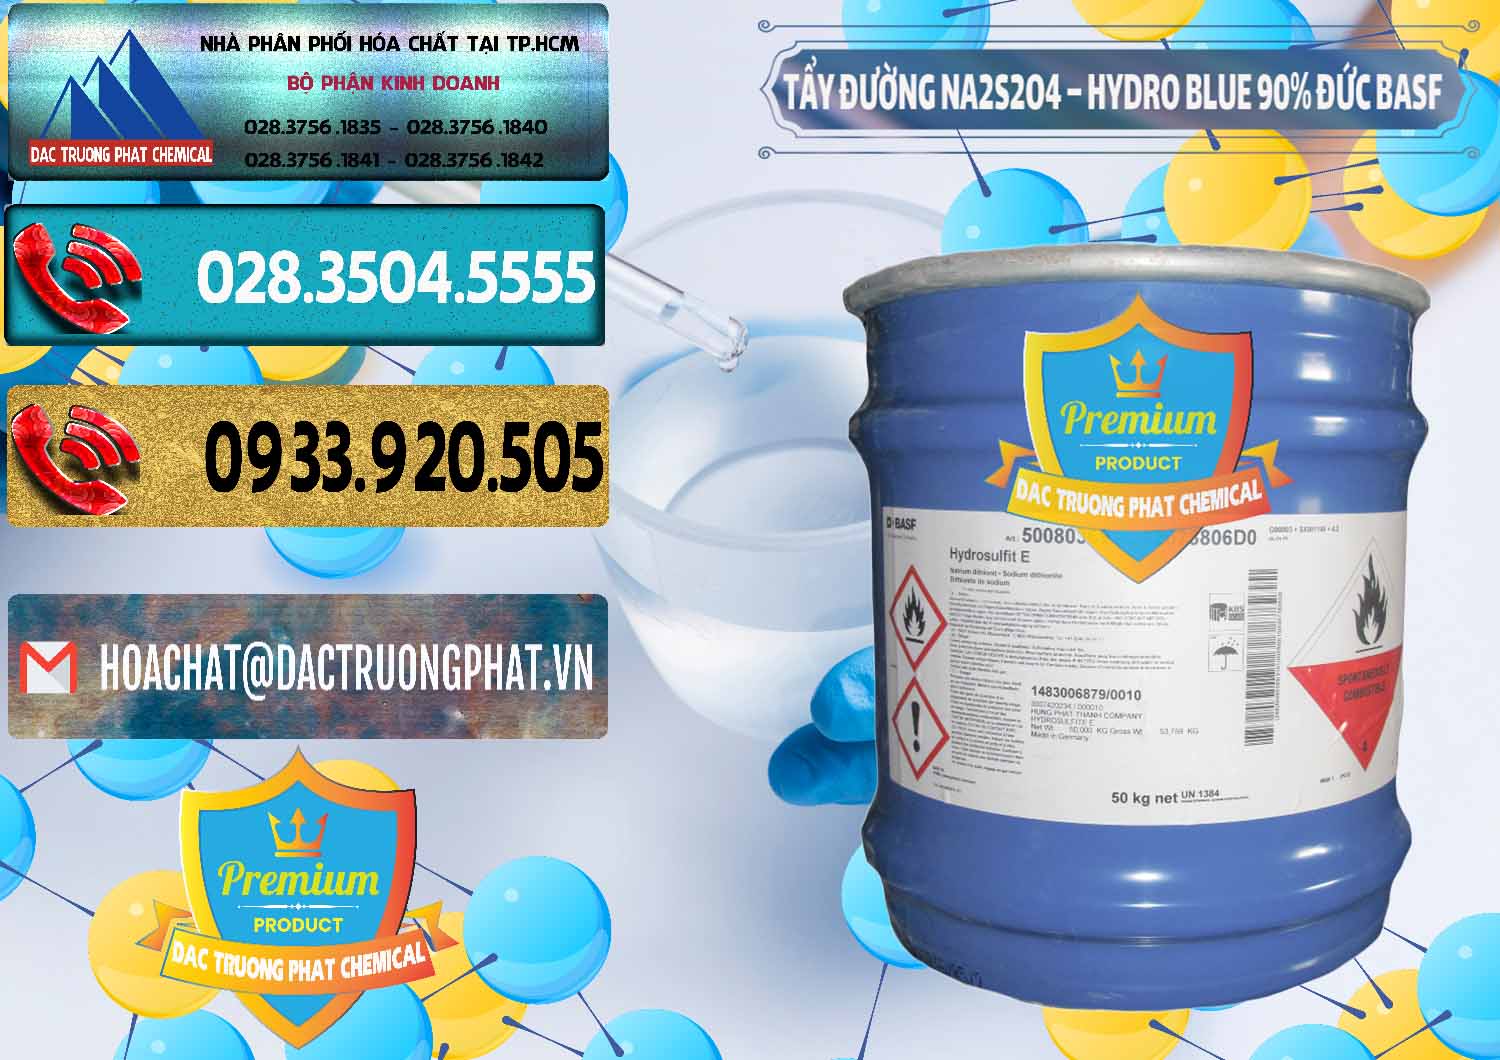 Công ty chuyên kinh doanh & bán Tẩy Đường NA2S2O4 – Hydro Blue 90% Thùng Lùn BASF Đức Germany - 0157 - Đơn vị chuyên phân phối - bán hóa chất tại TP.HCM - hoachatdetnhuom.com